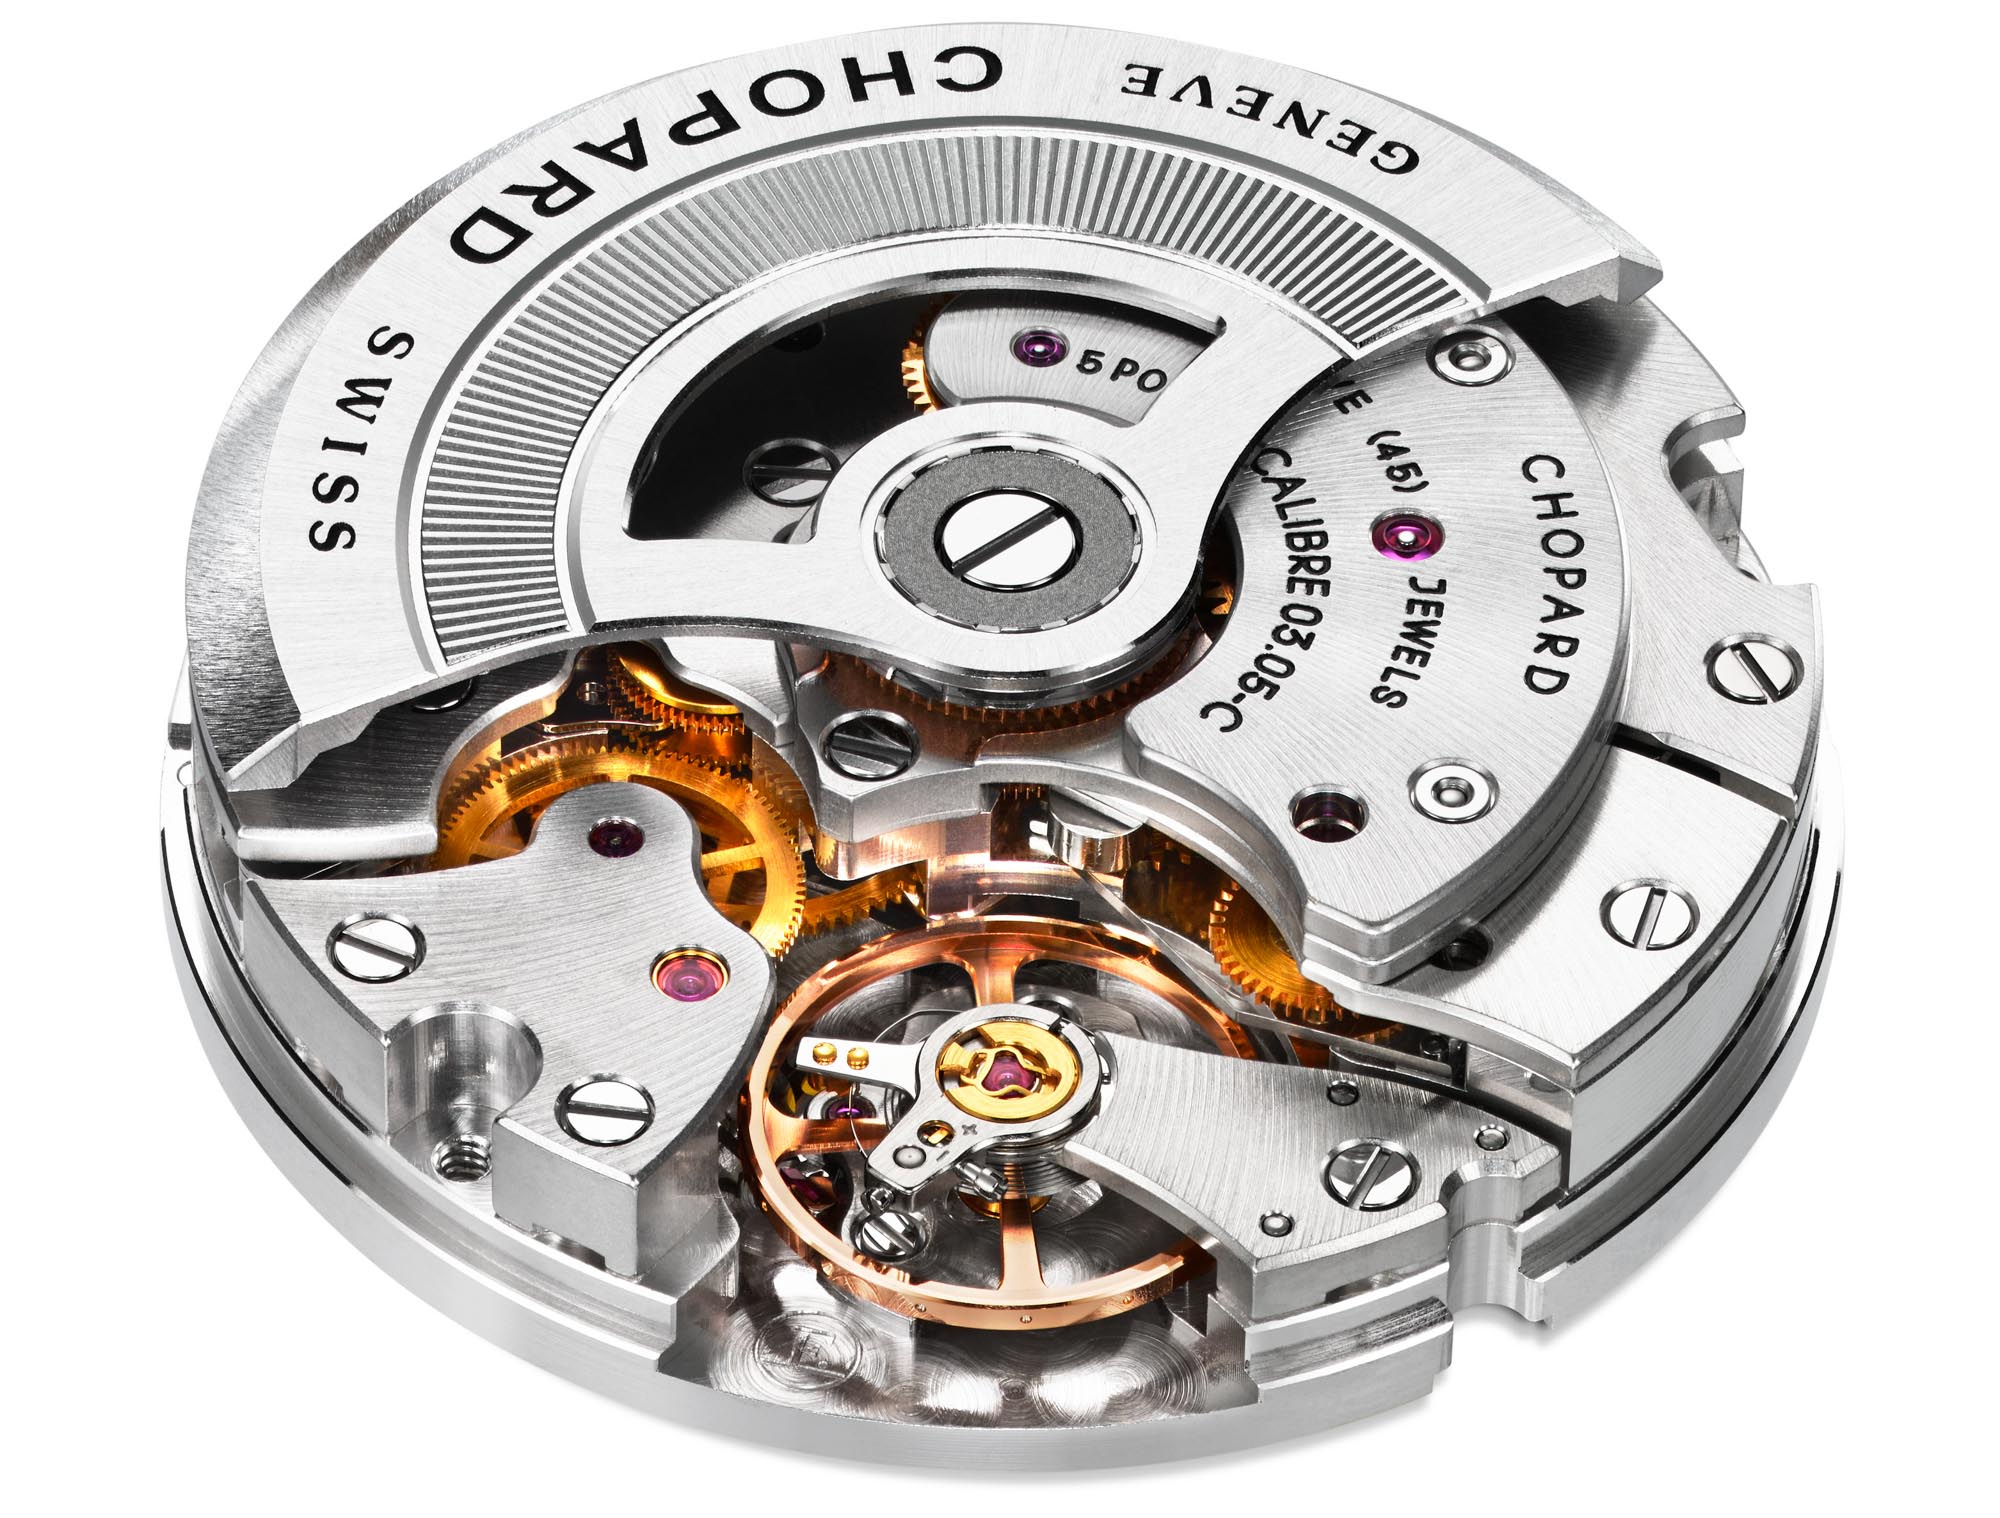 Часы Chopard Alpine Eagle XL Chrono сочетают в себе высокоточные функции и динамичный внешний вид